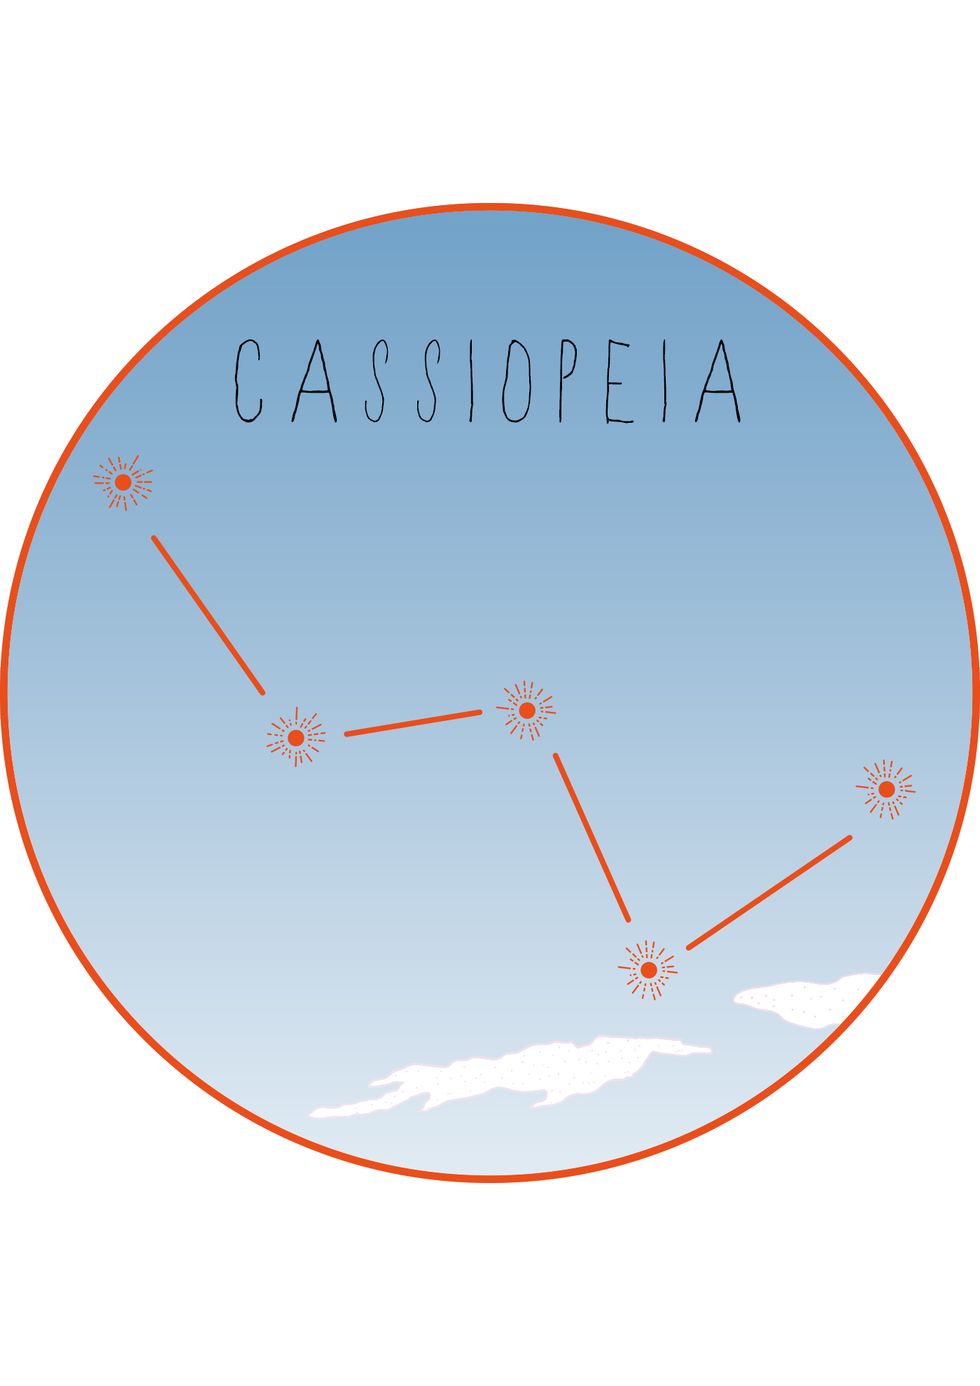 Cassiopeia | ELLE UK